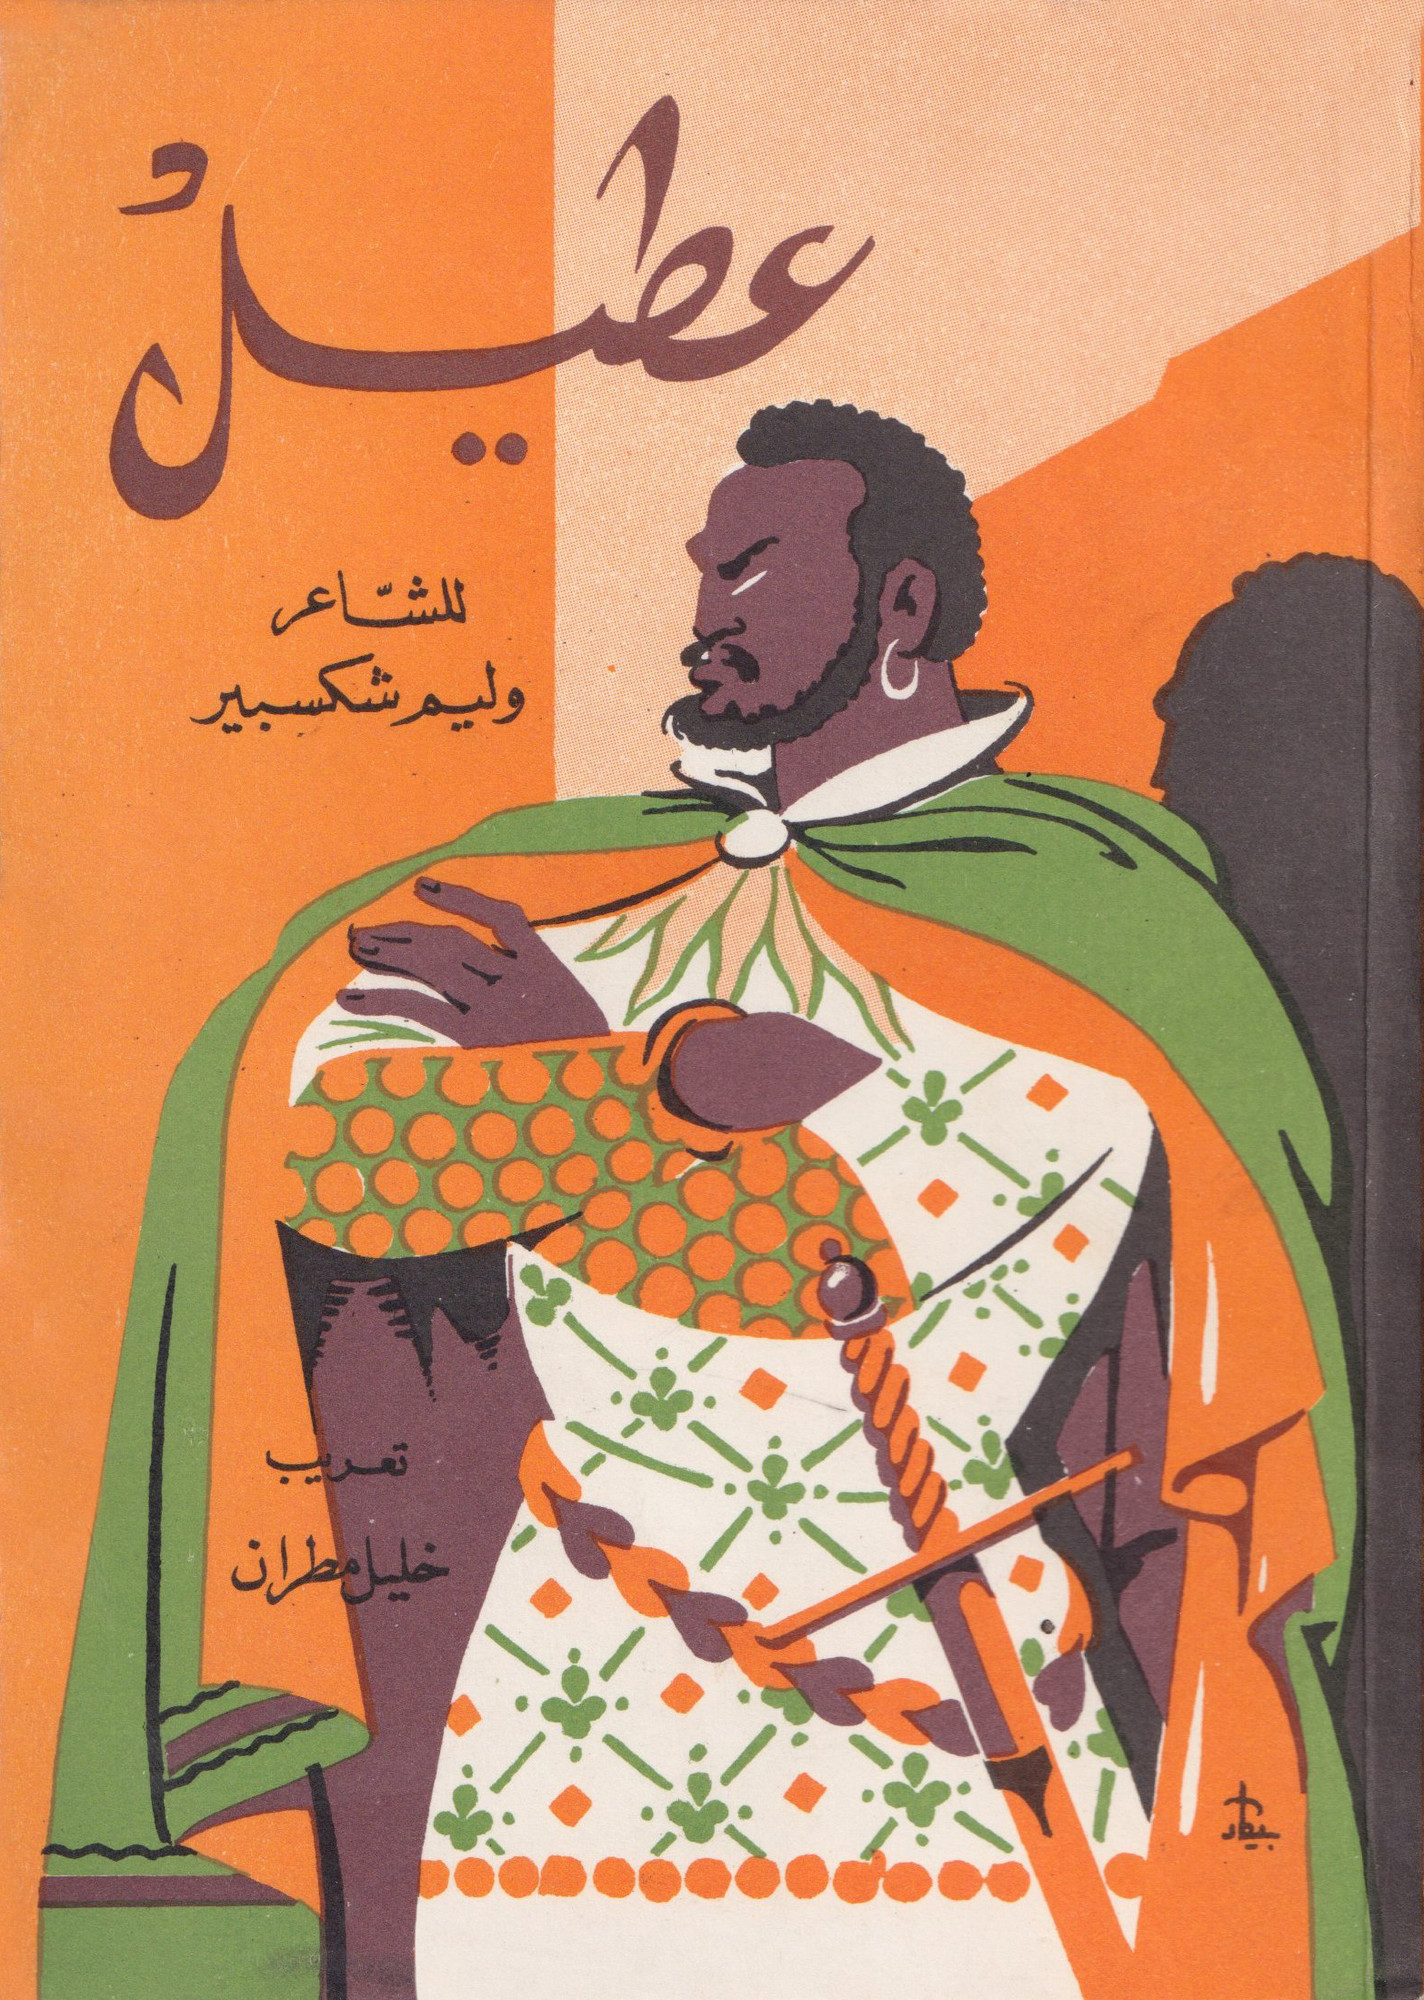 “Otello”by William Shakespeare. Designer: Hussien Bikar Anno, 1976